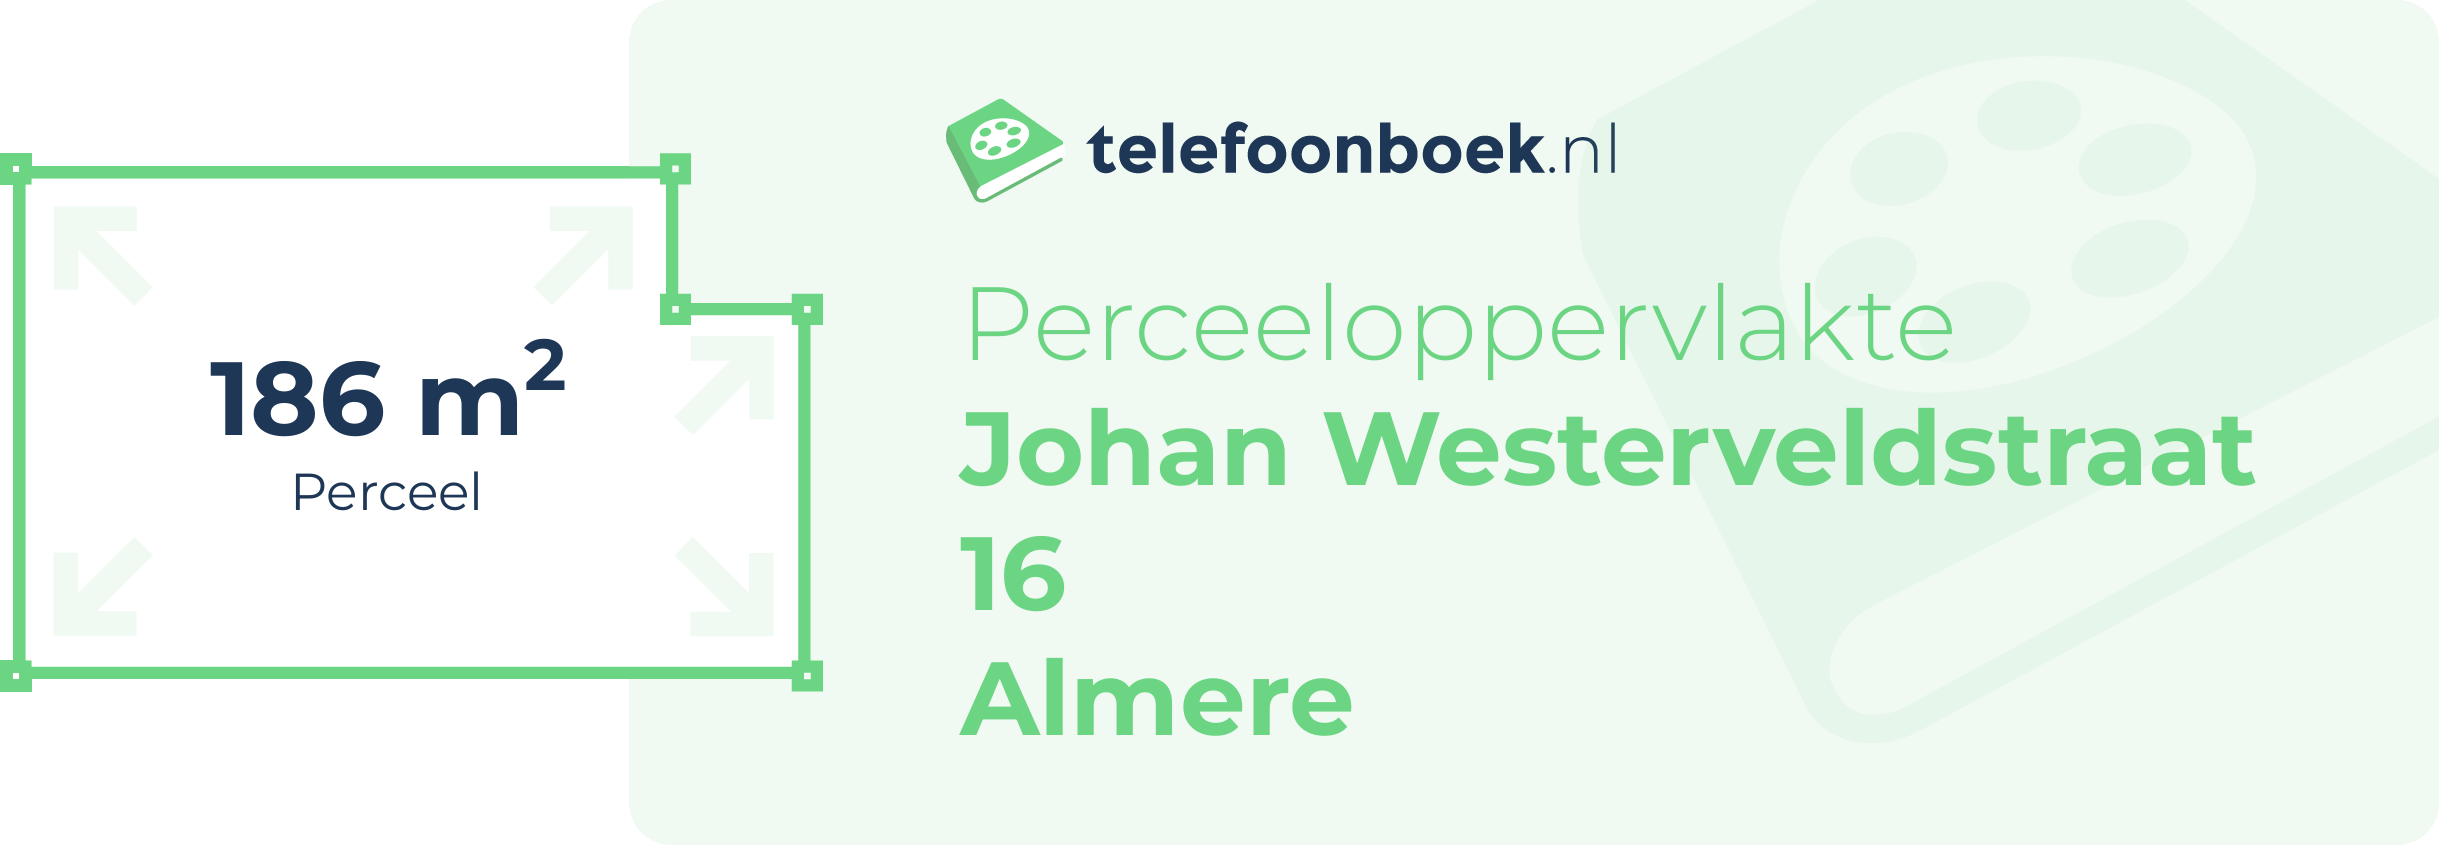 Perceeloppervlakte Johan Westerveldstraat 16 Almere